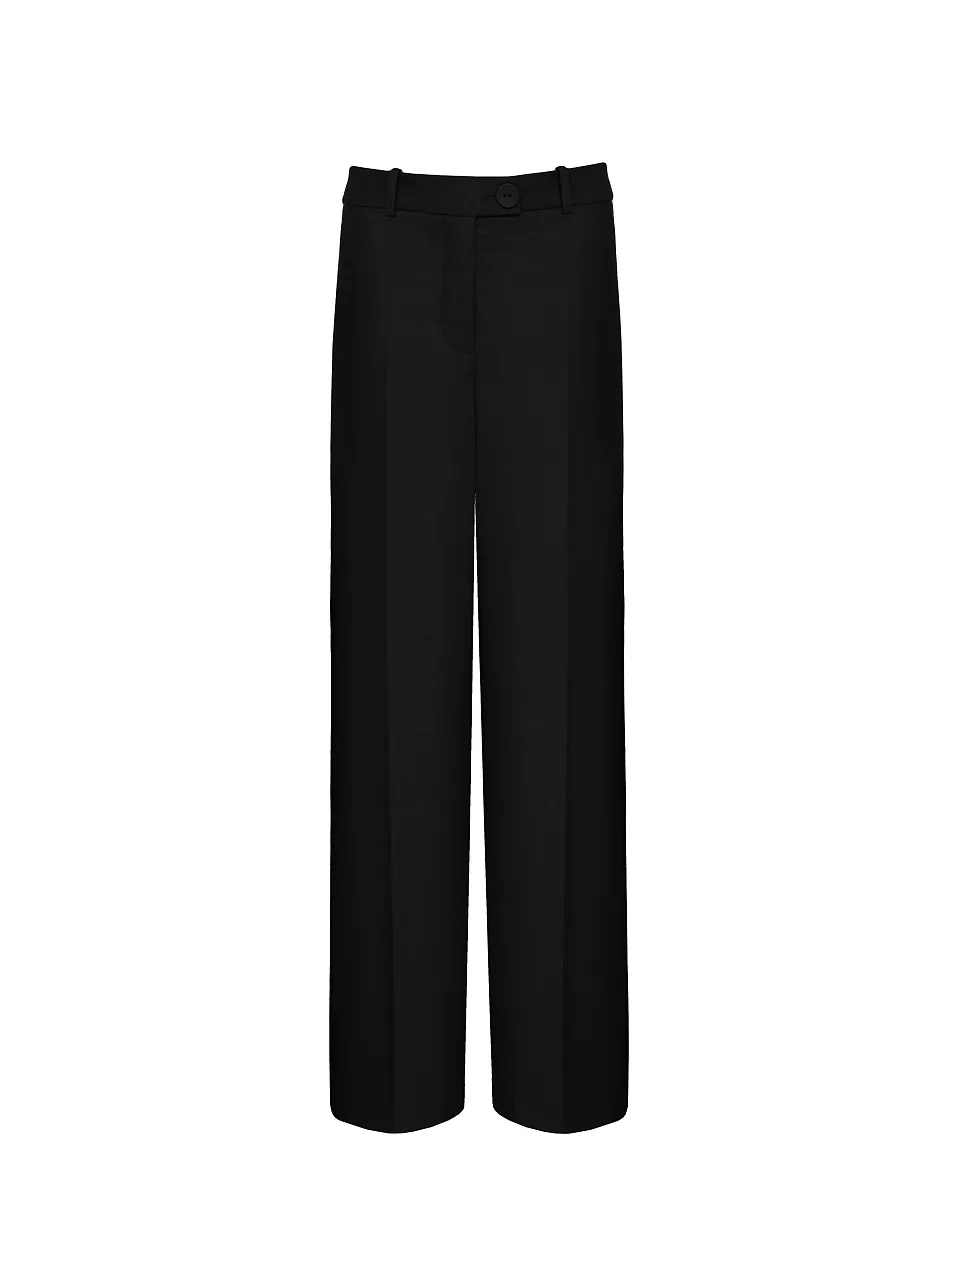 Жіночі штани Stimma Алібей, колір - чорний